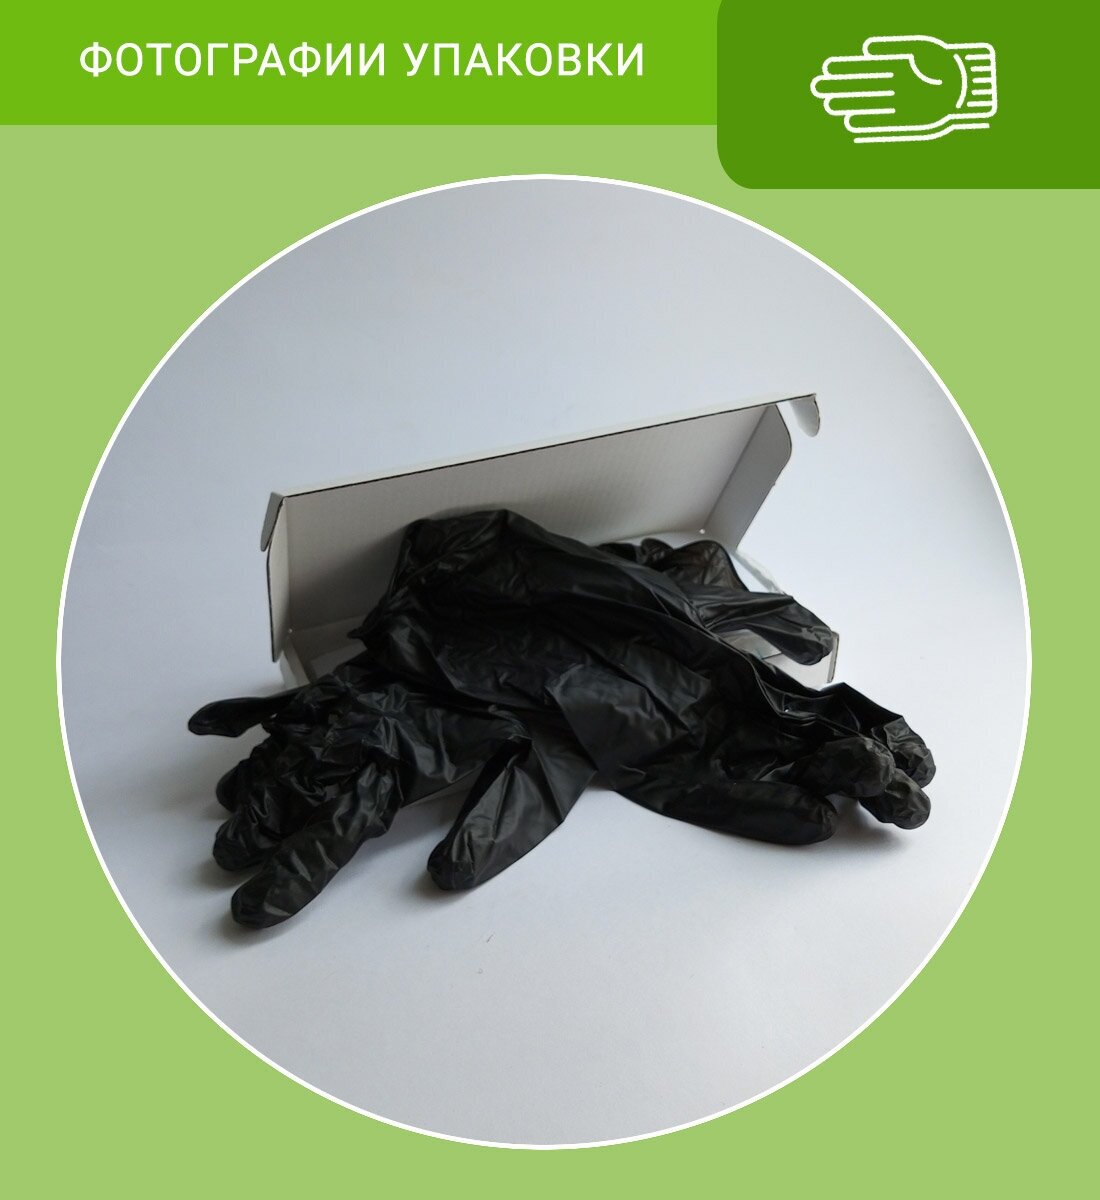 Перчатки нитриловые TGZN111 в коробке, 10 пар/20 штук, черный цвет, размер: L